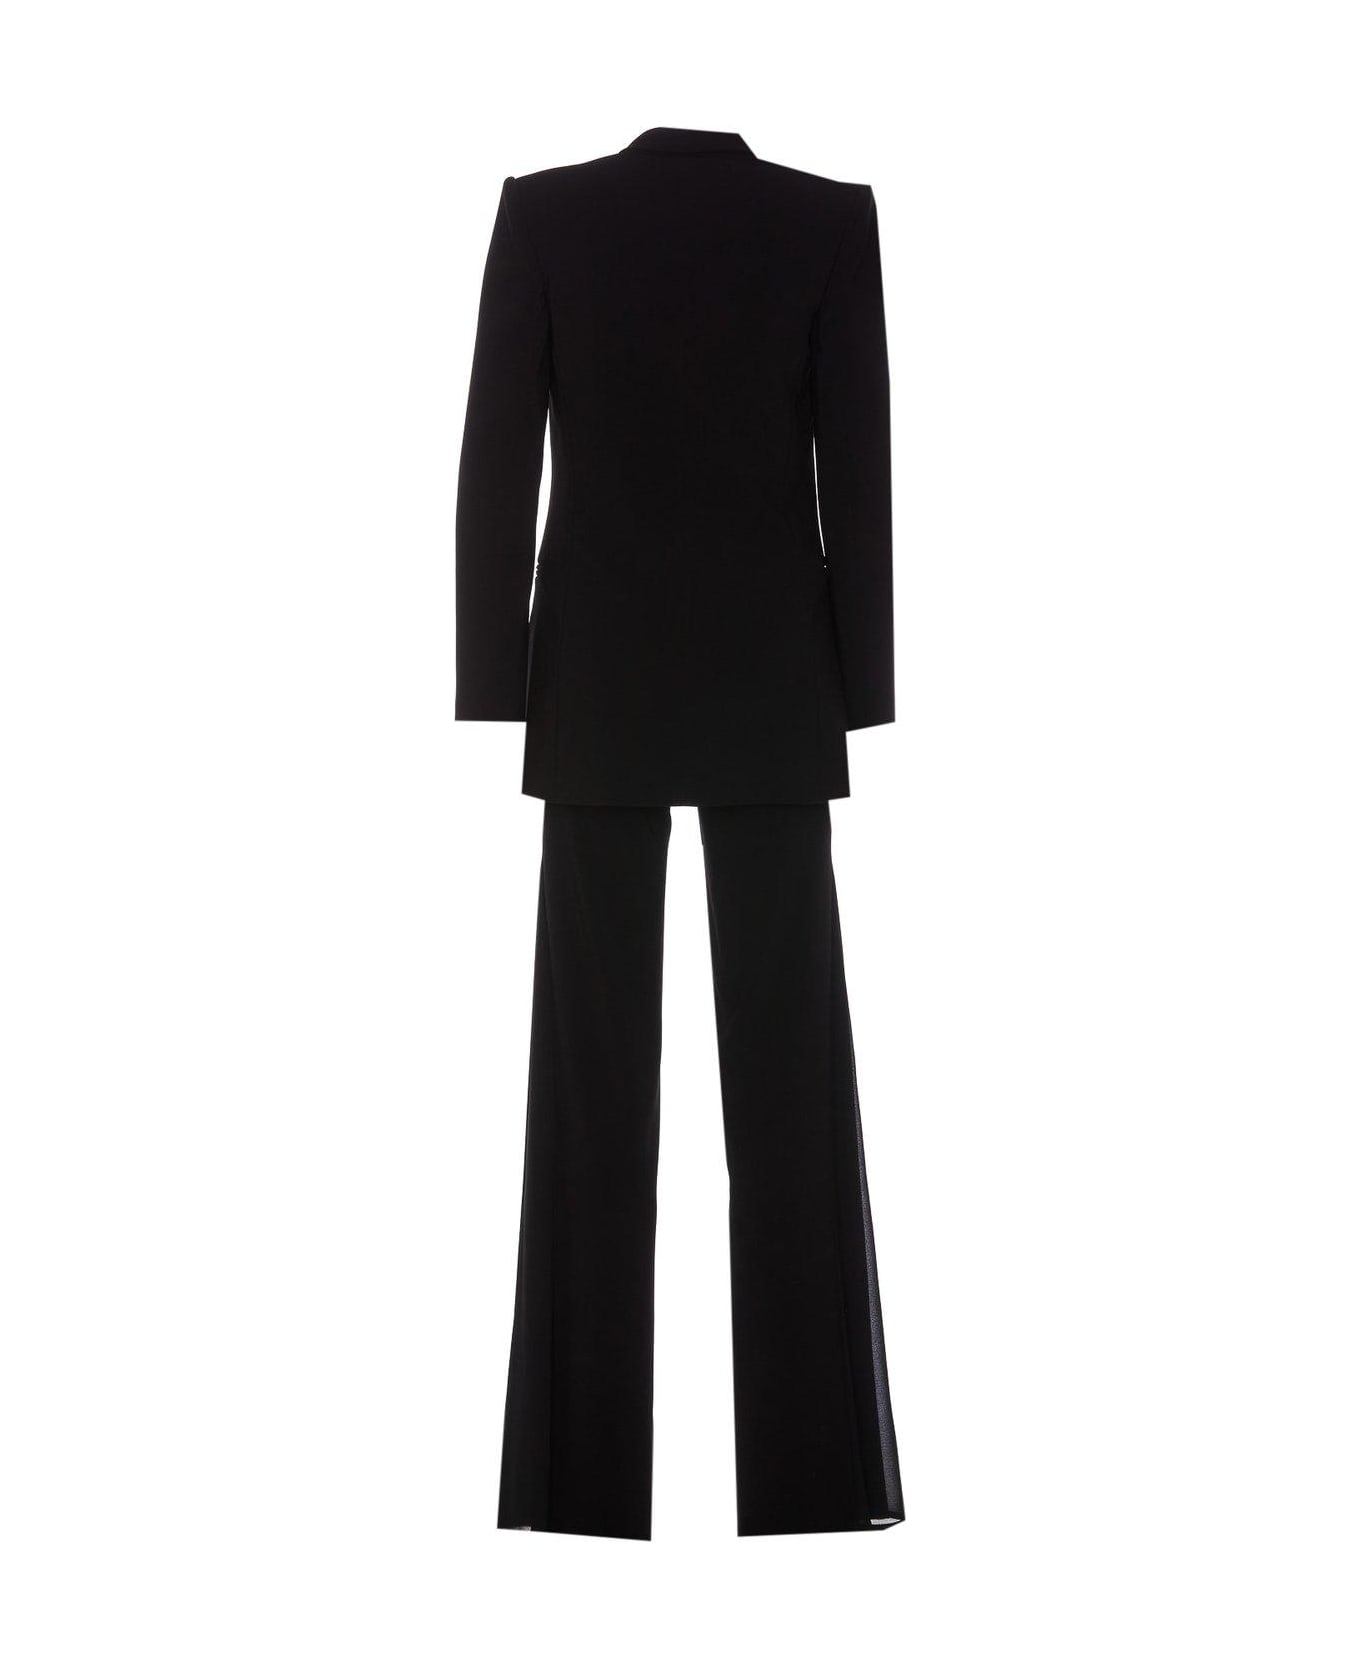 Elisabetta Franchi Logo Plaque Peak Lapels Suit - Black